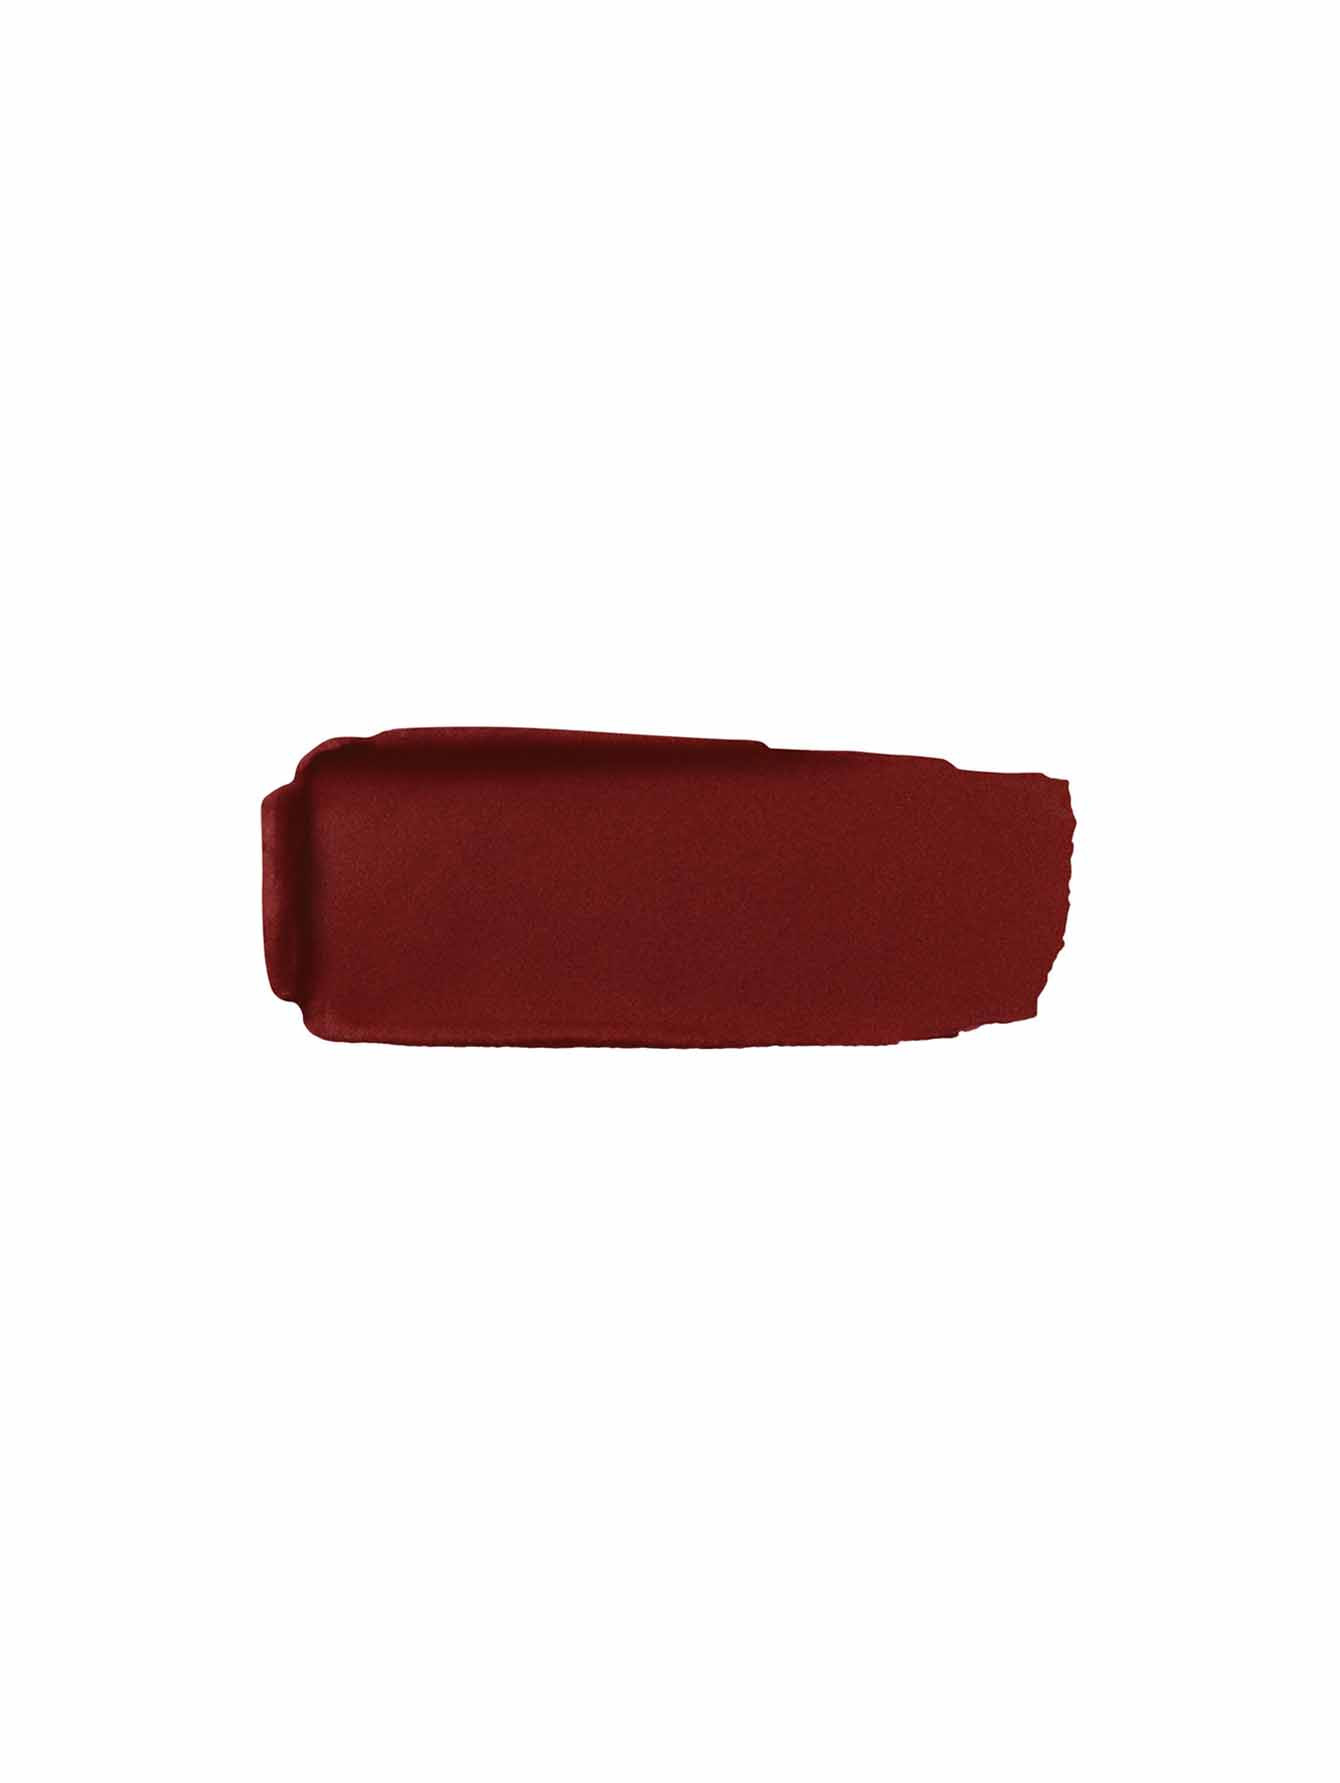 Матовая губная помада №910 Глубокий красный Rouge G - Обтравка1